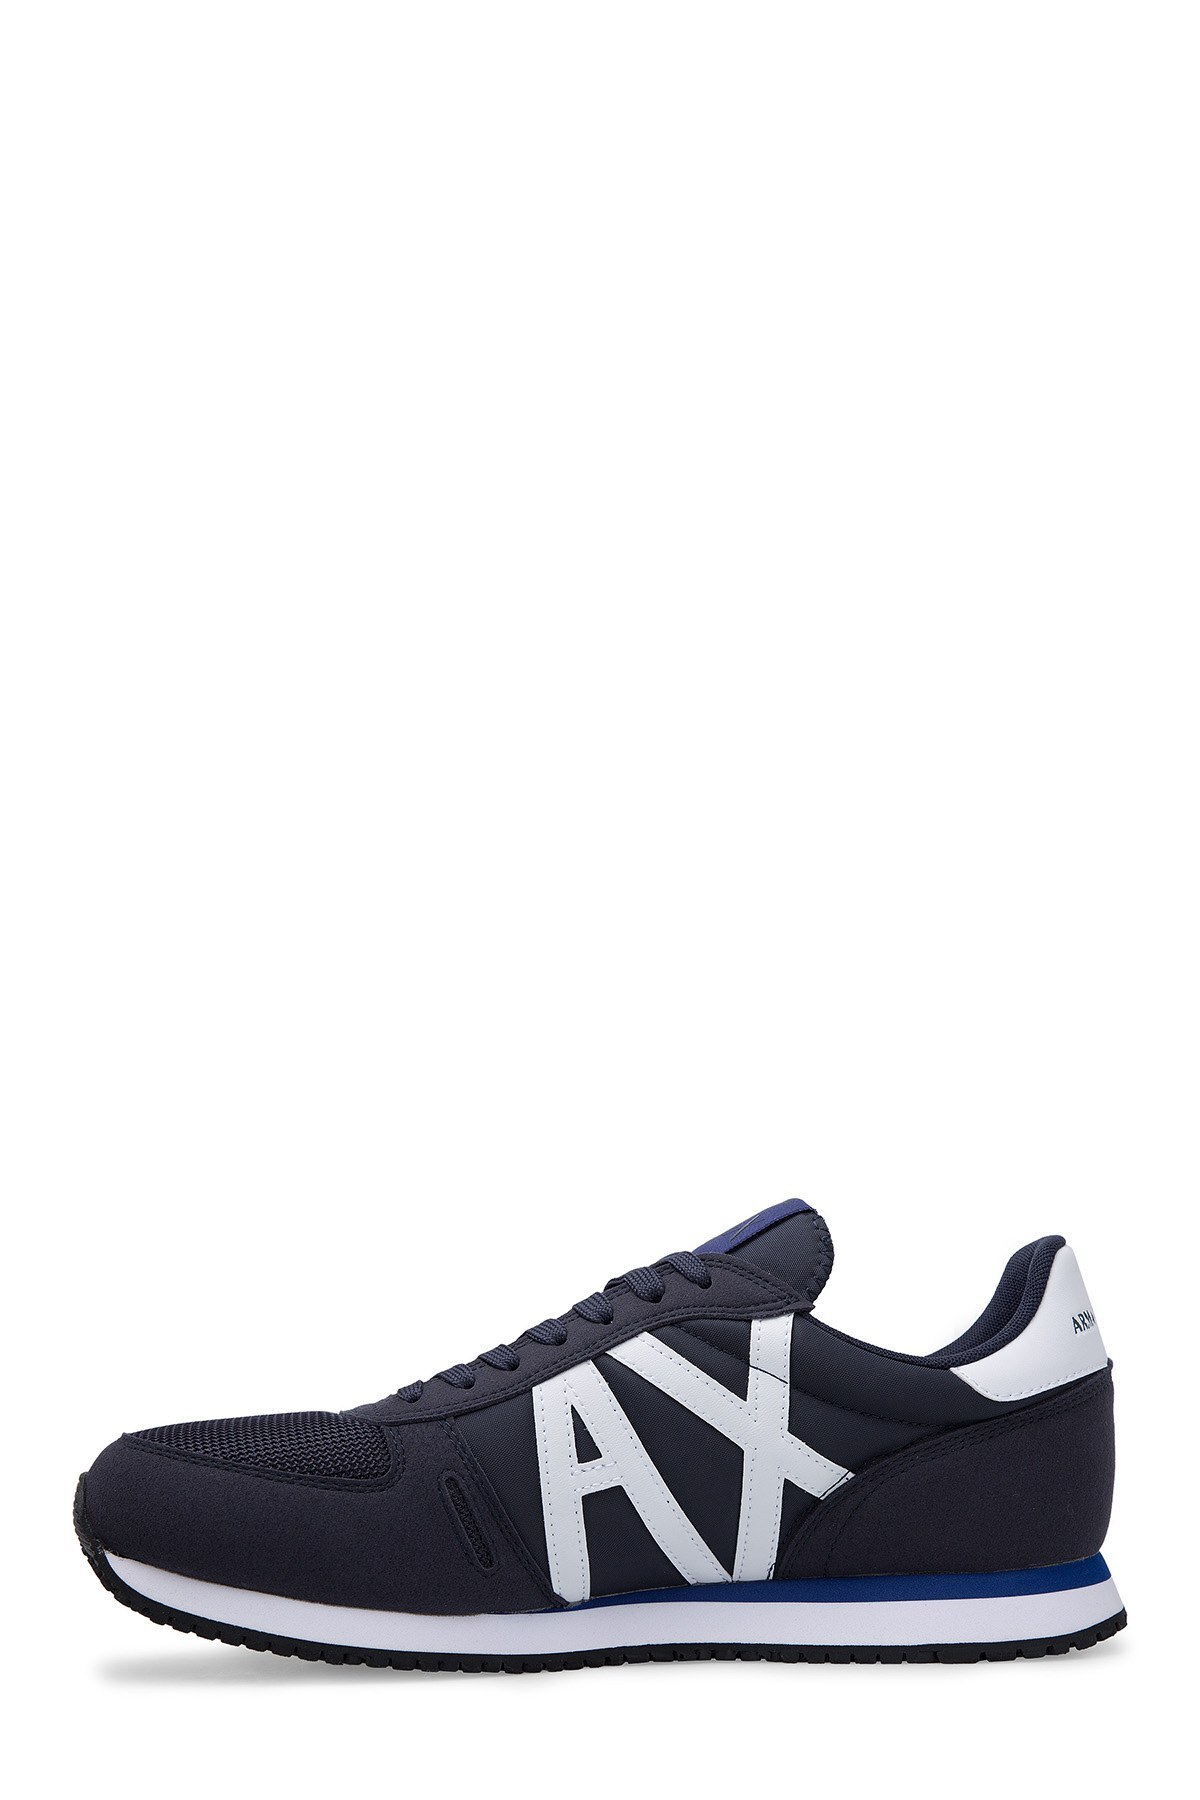 Armani Exchange Erkek Ayakkabı XUX017 XV028 D813 LACİVERT-BEYAZ